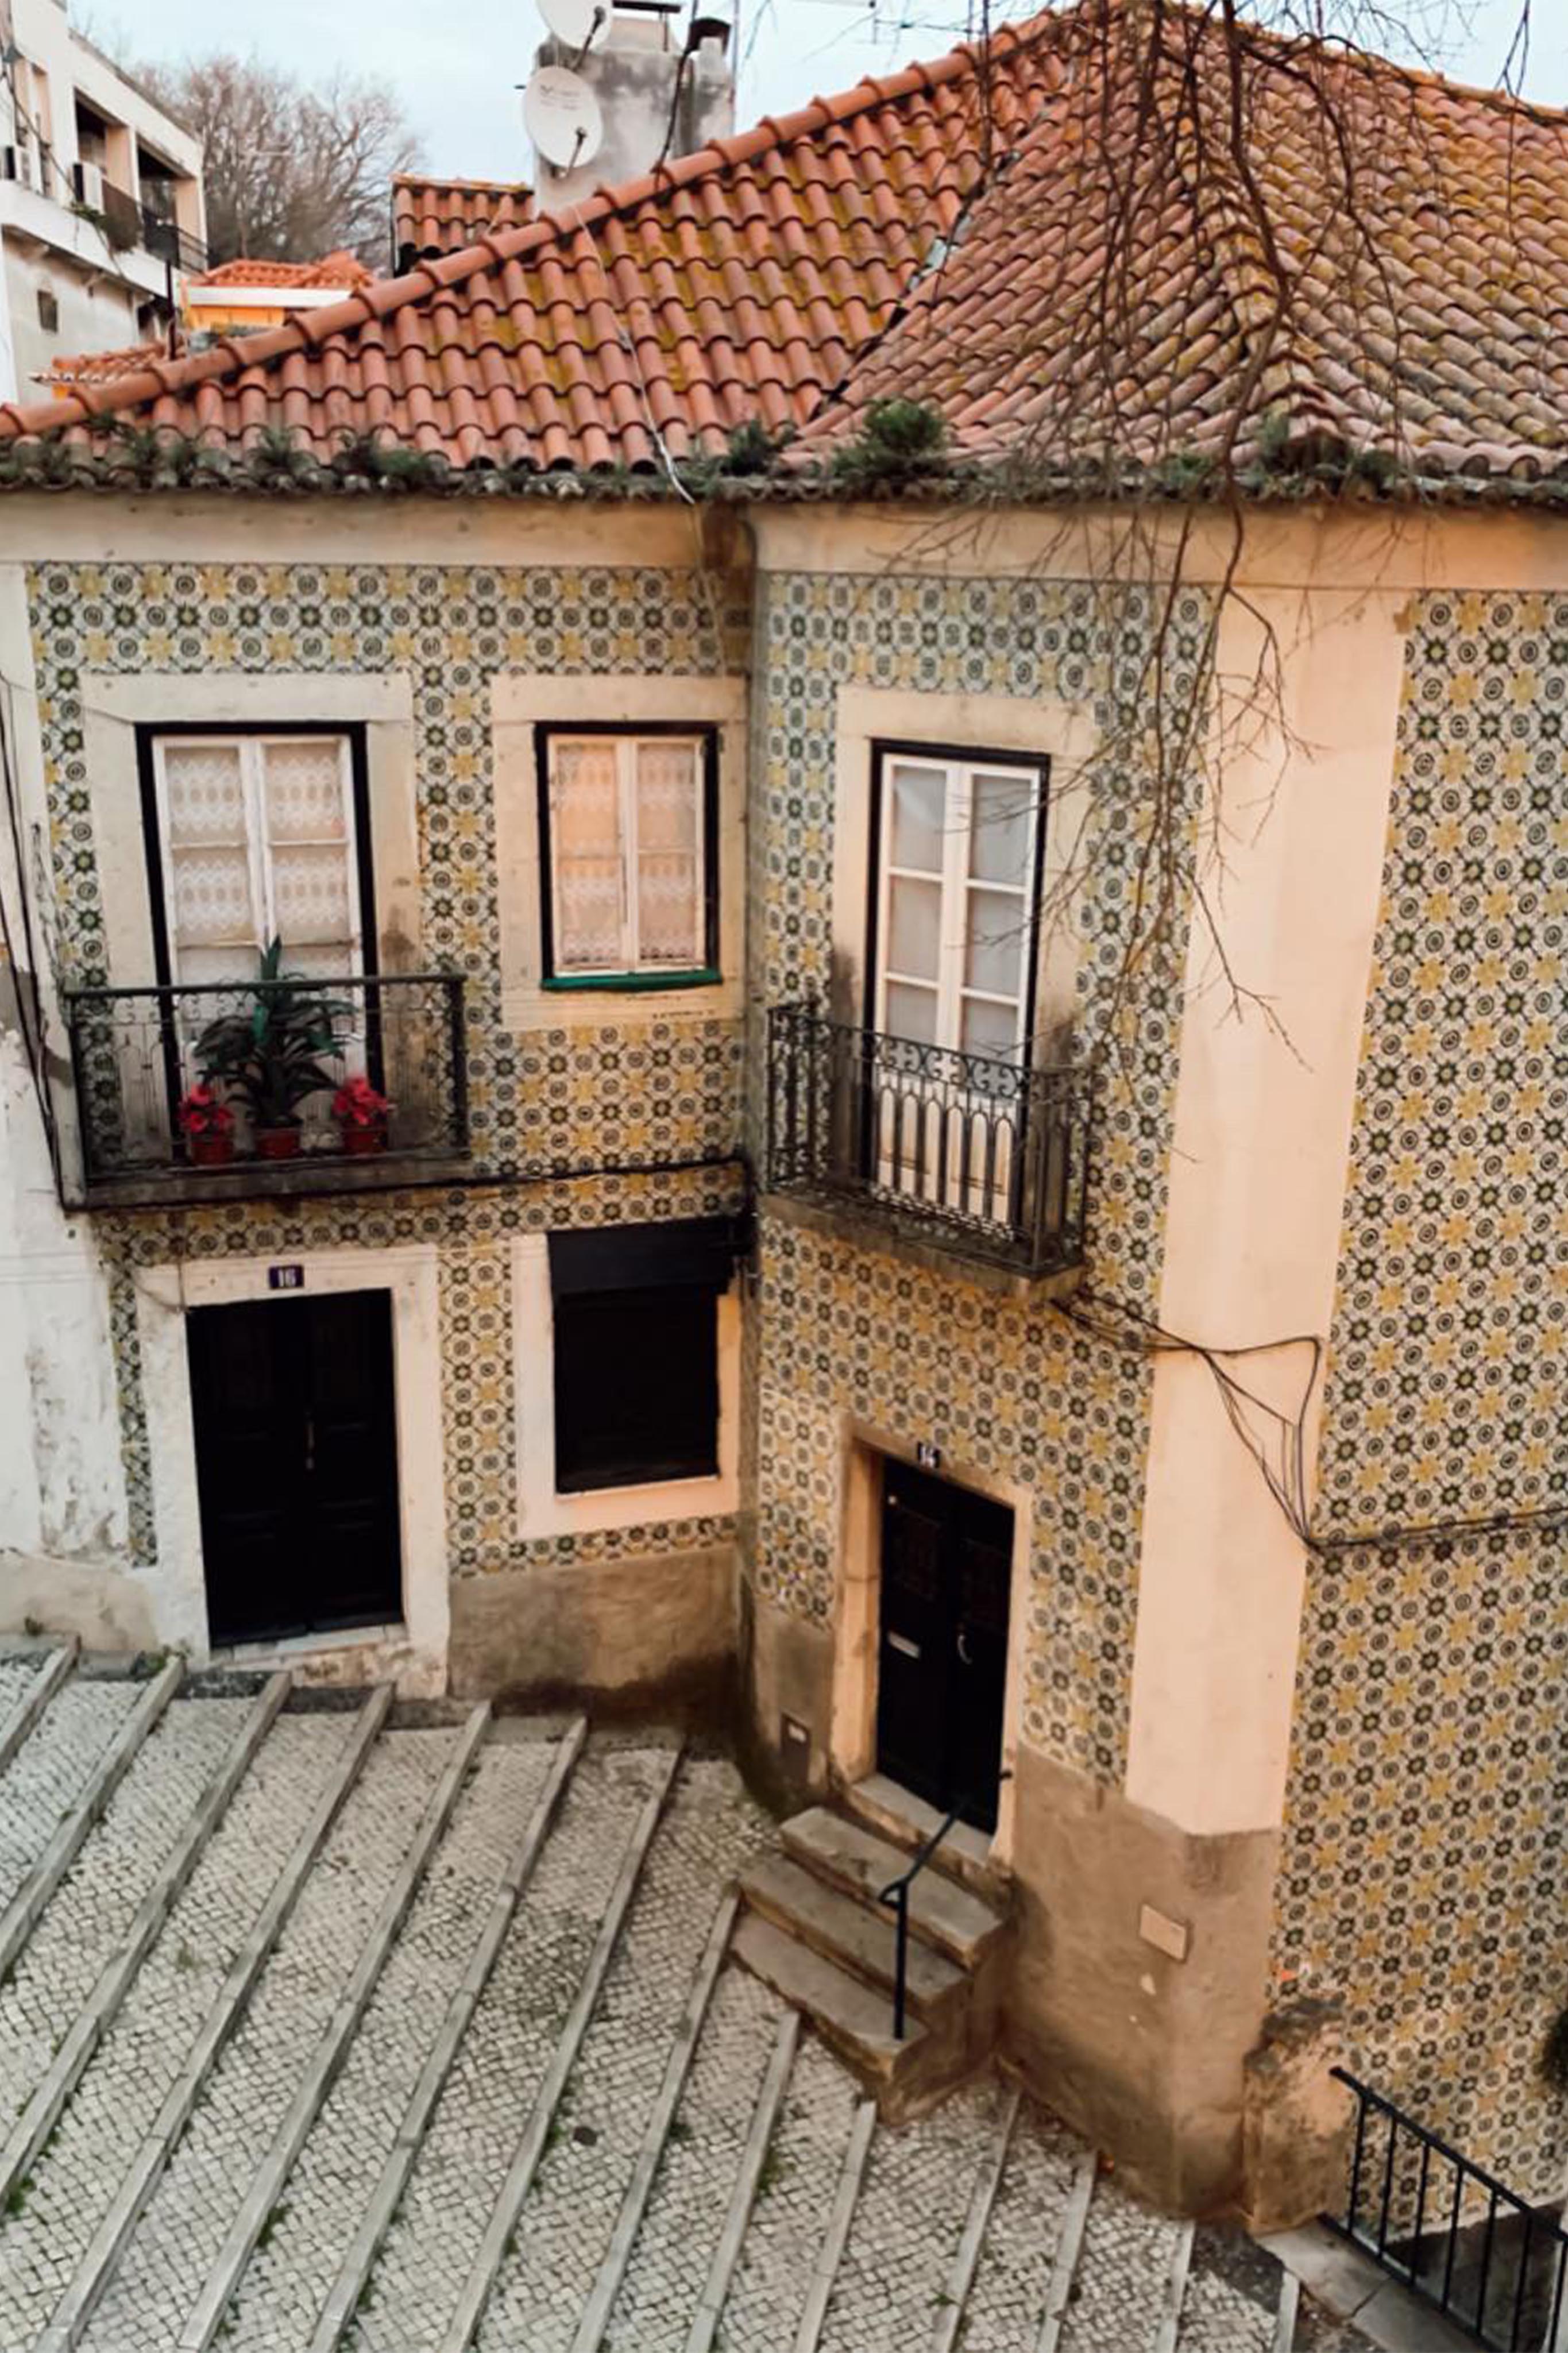 Lissabon - was ihr sehen müsst, wenn ihr das erste Mal vor Ort seid. 